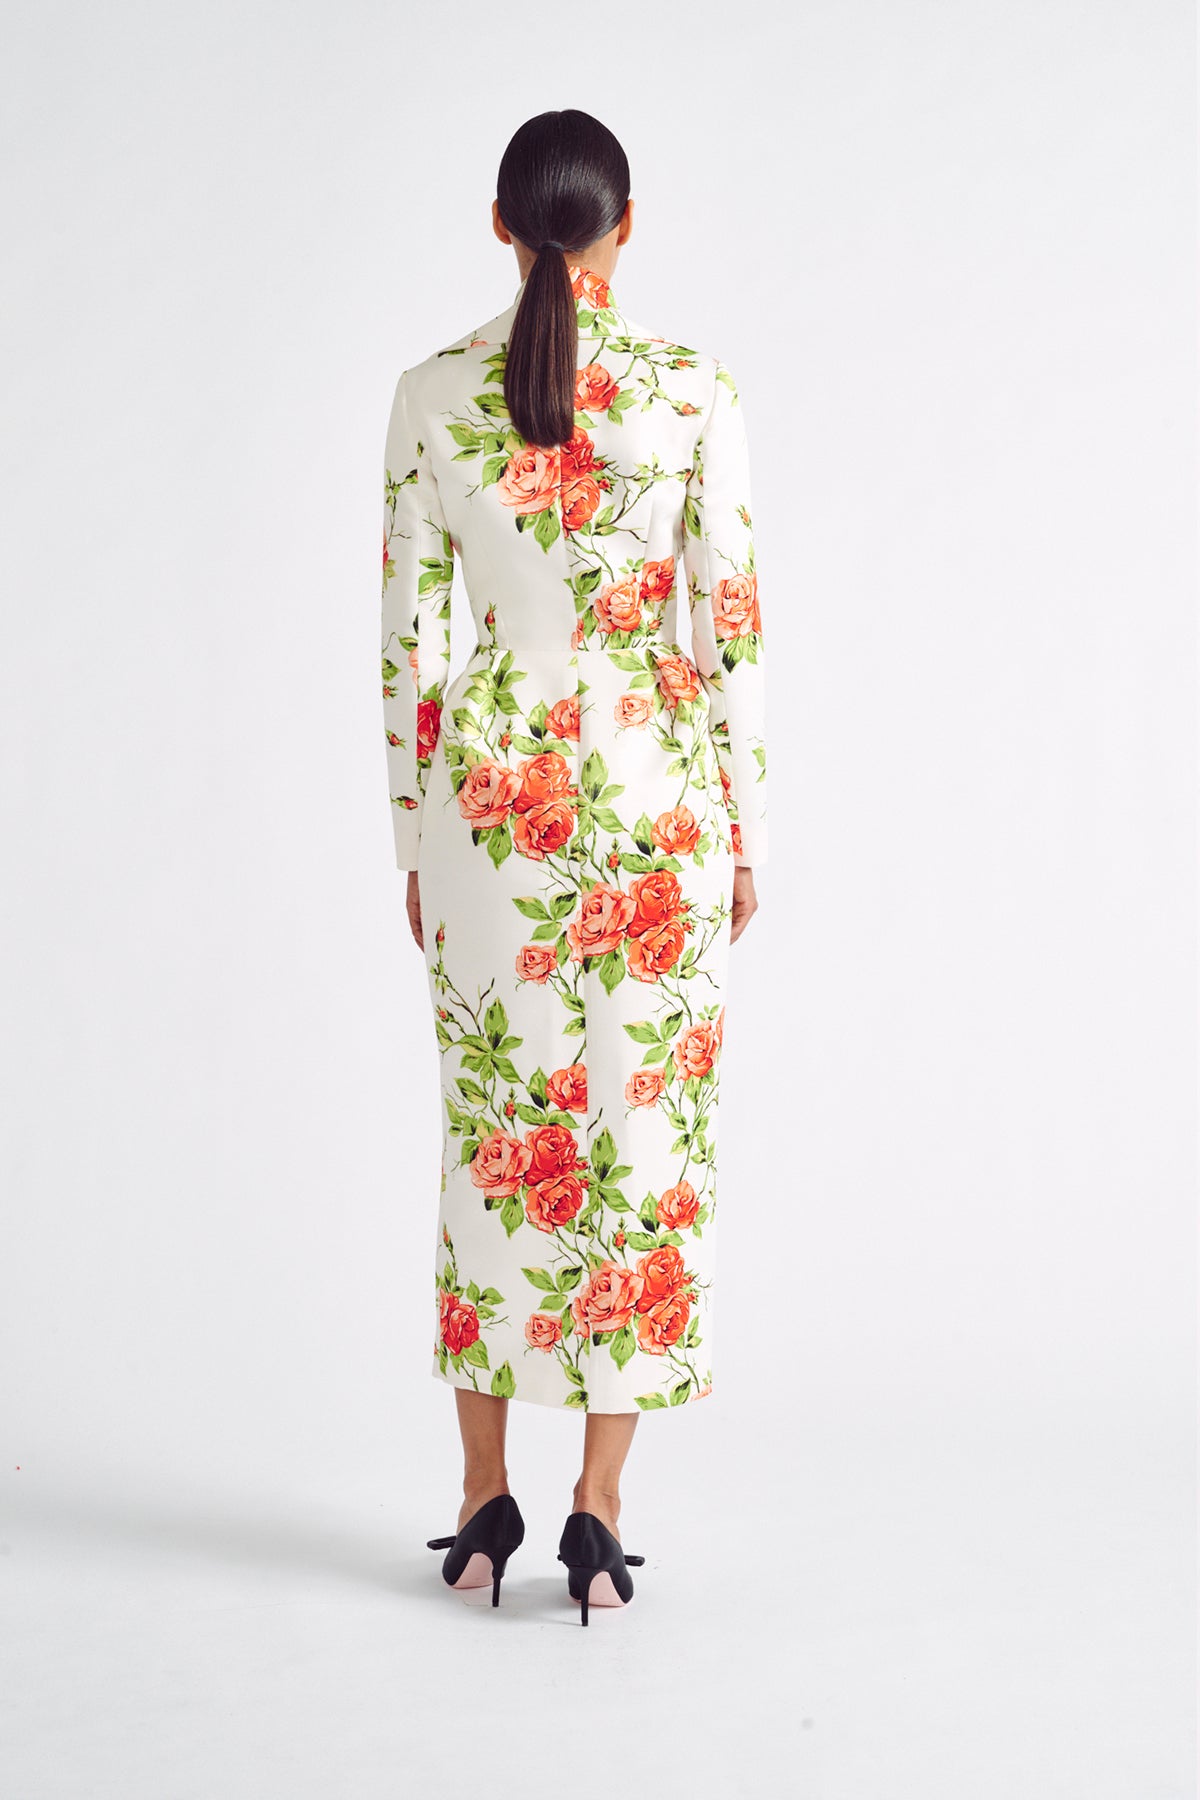 Andie Dress | Orange Floral Print Long Sleeve Dress | Emilia Wickstead